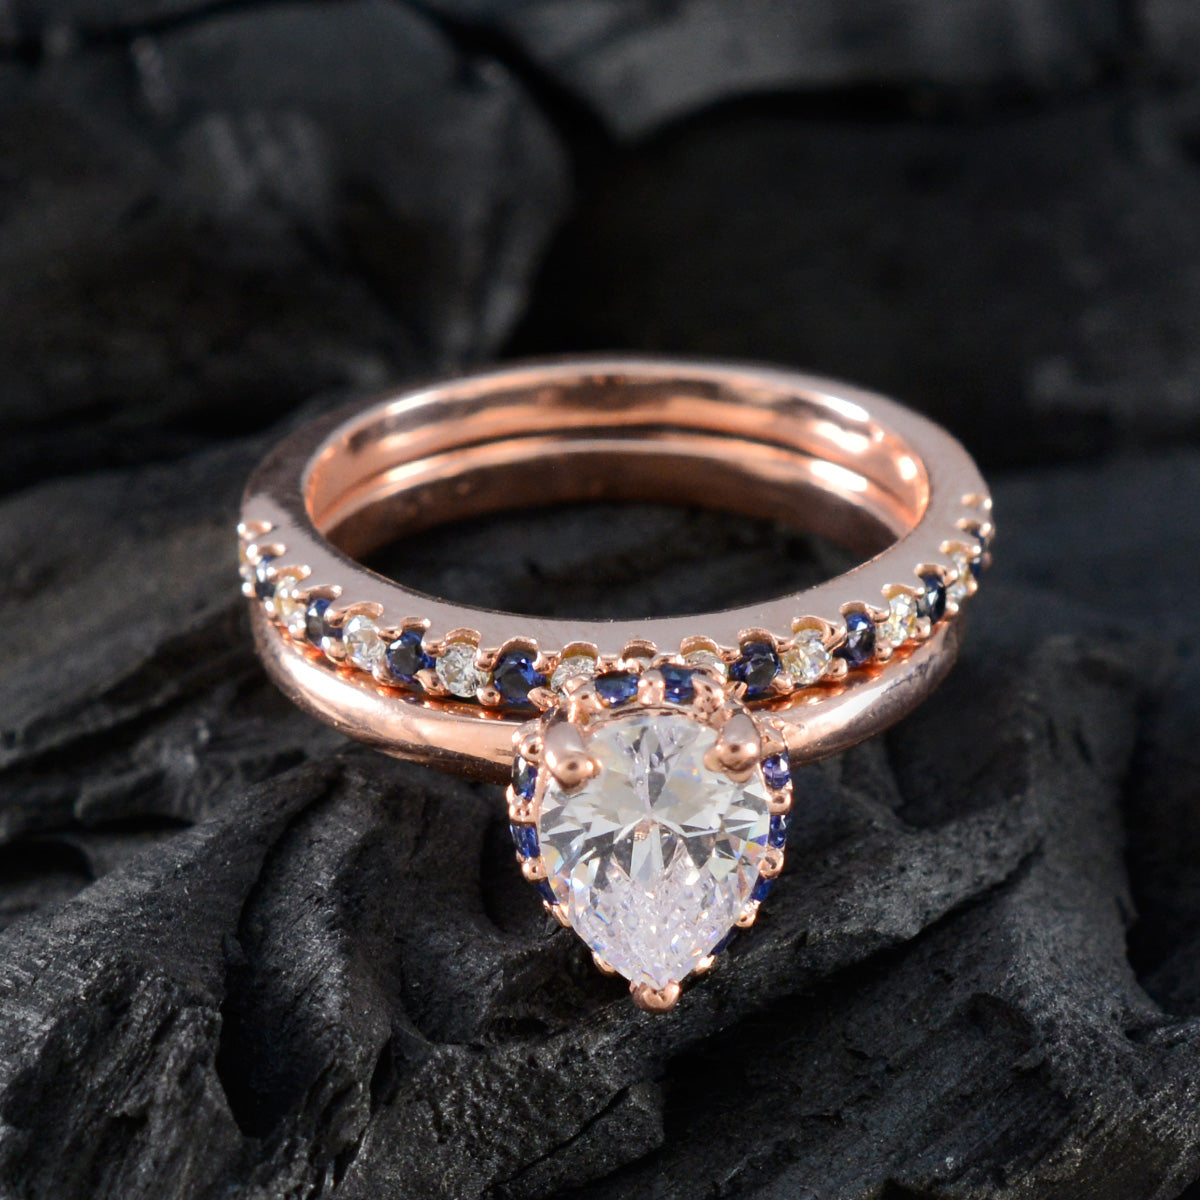 riyo attraente anello in argento con placcatura in oro rosa zaffiro blu pietra cz a forma di pera con montatura alla moda anello per San Valentino